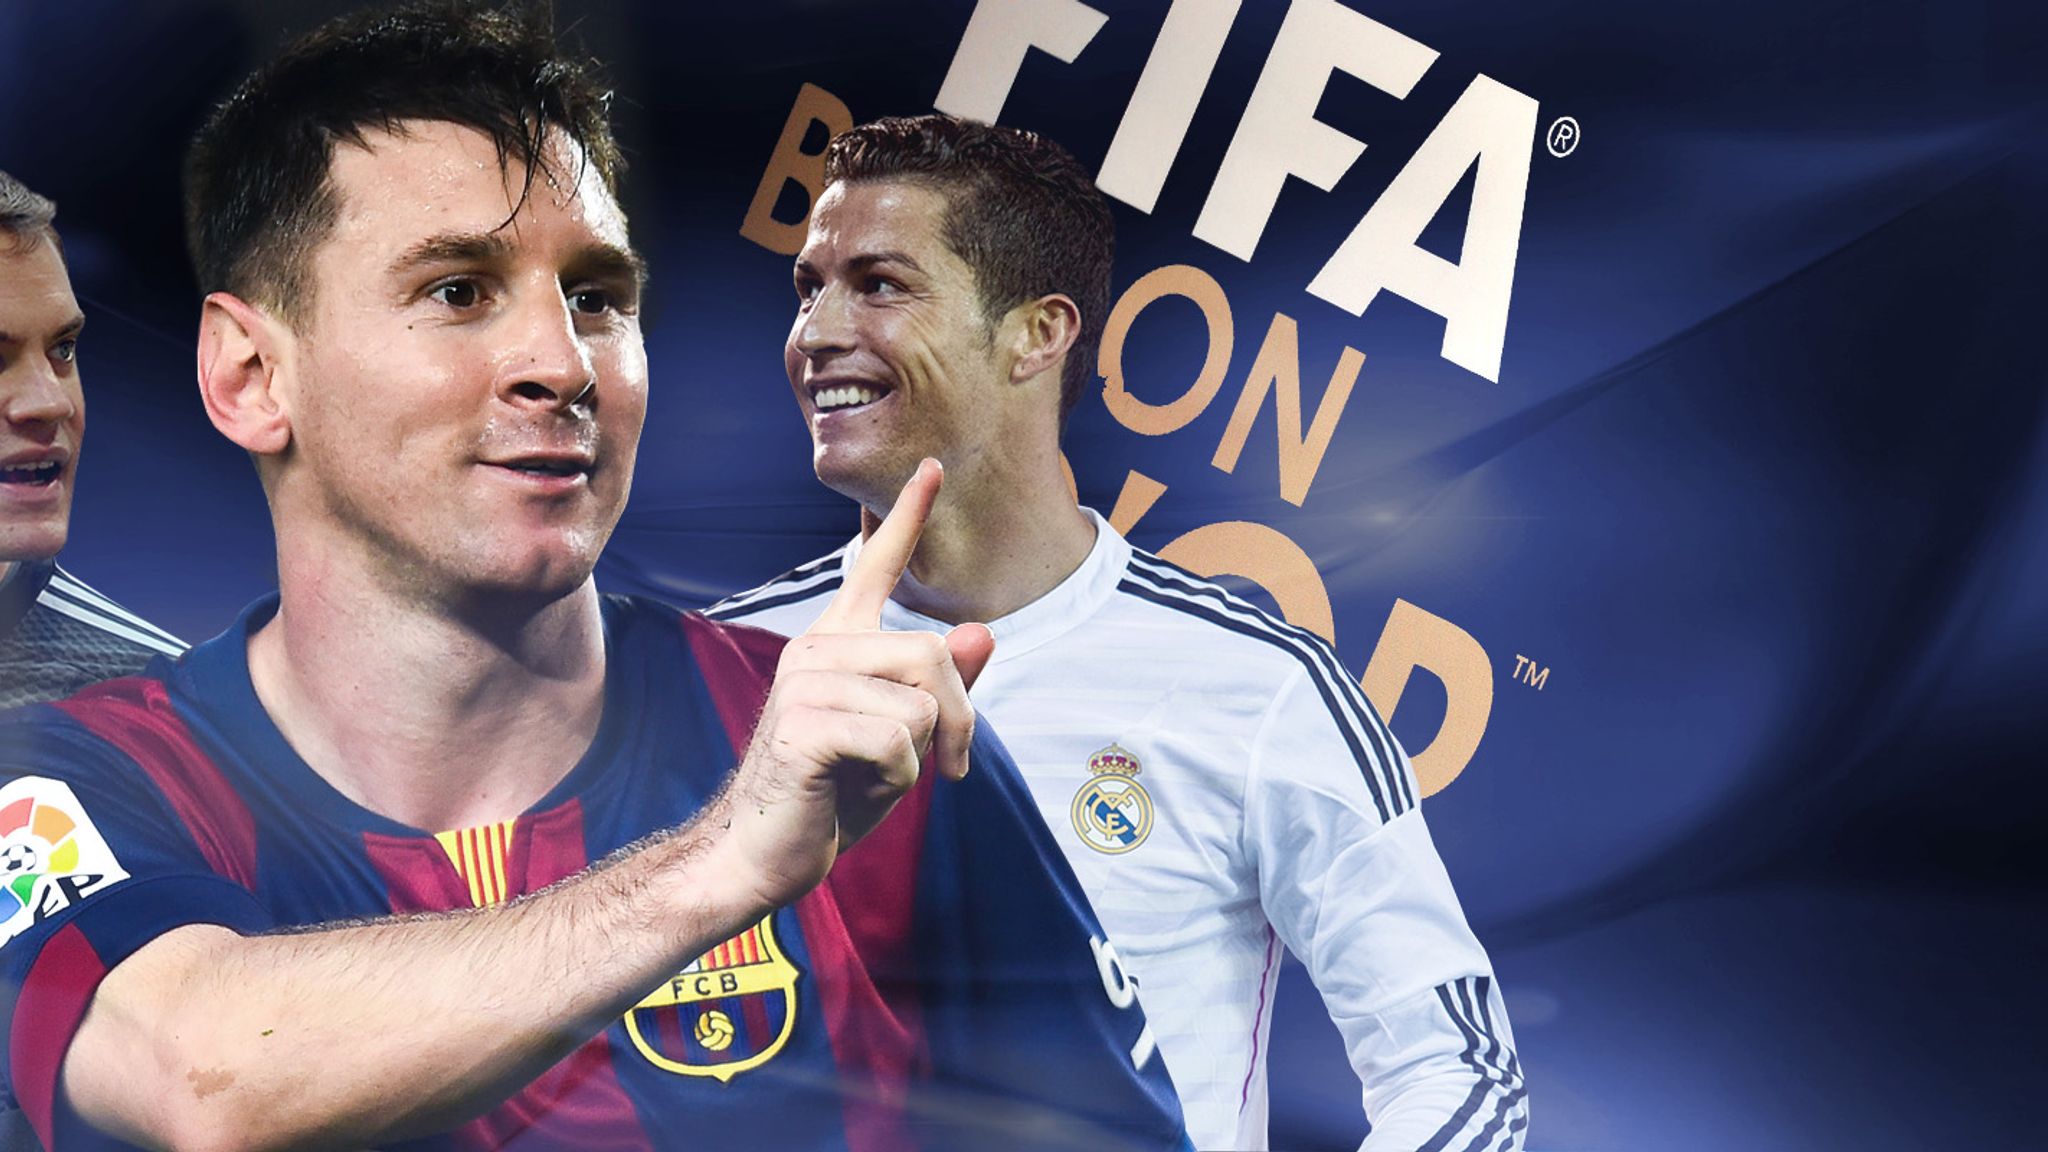 HD wallpaper: Soccer, Cristiano Ronaldo, Lionel Messi, Neymar